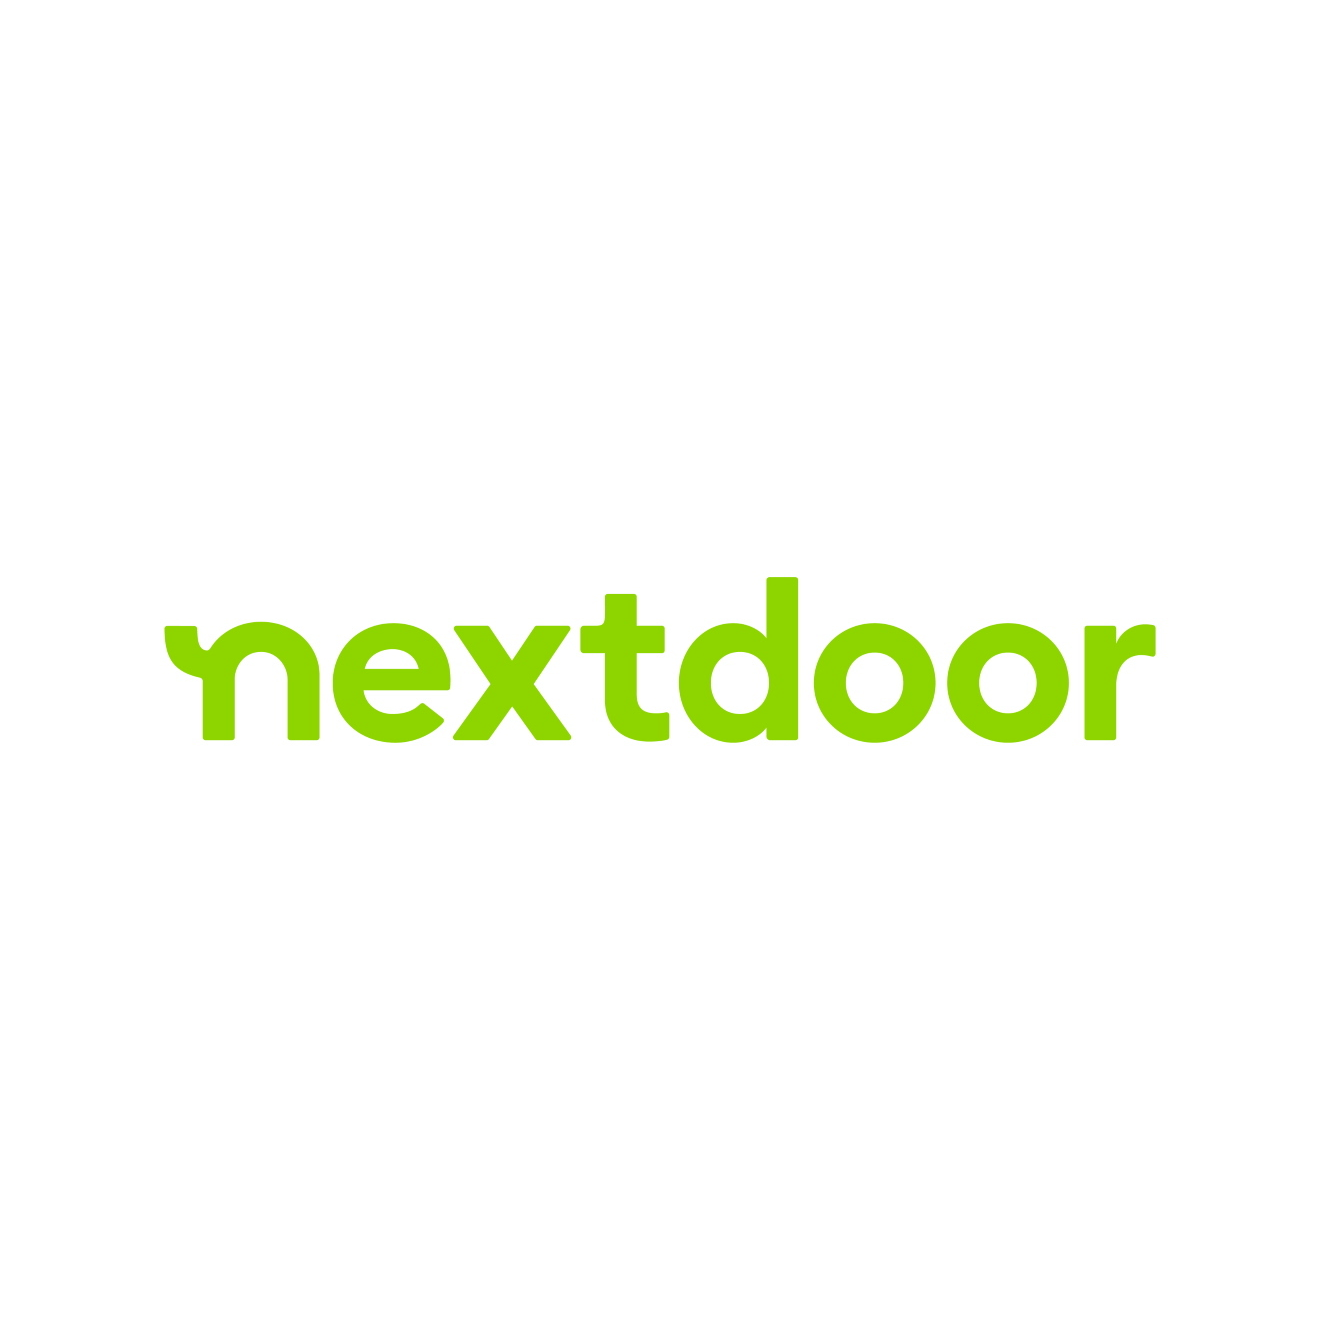 Nextdoor Stock